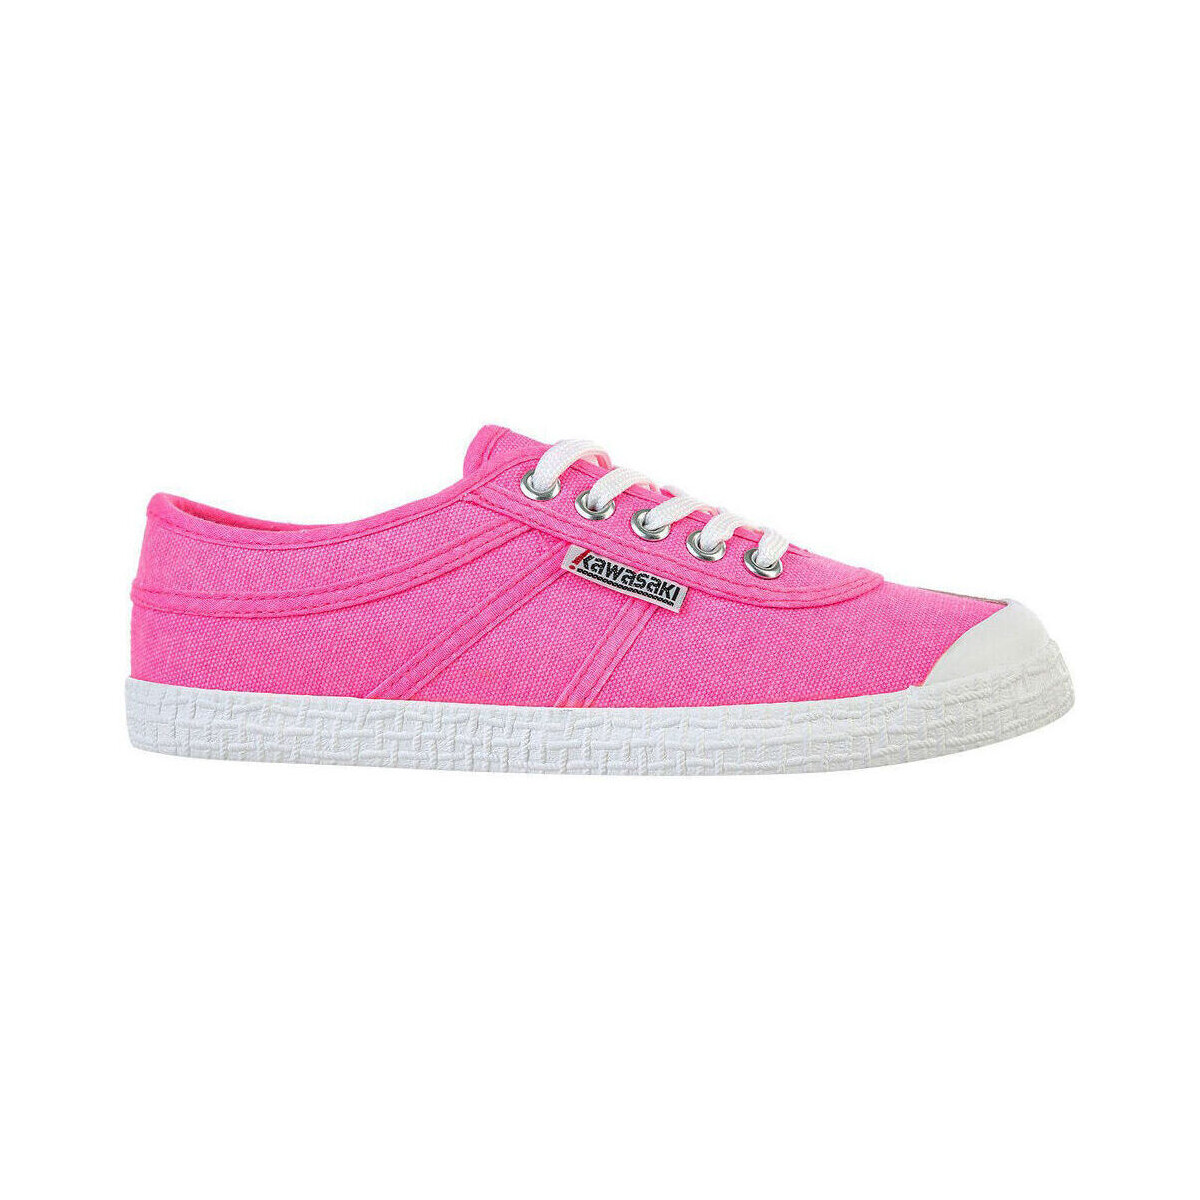 Pantofi Femei Sneakers Kawasaki Original Neon Canvas Shoe K202428 4014 Knockout Pink roz